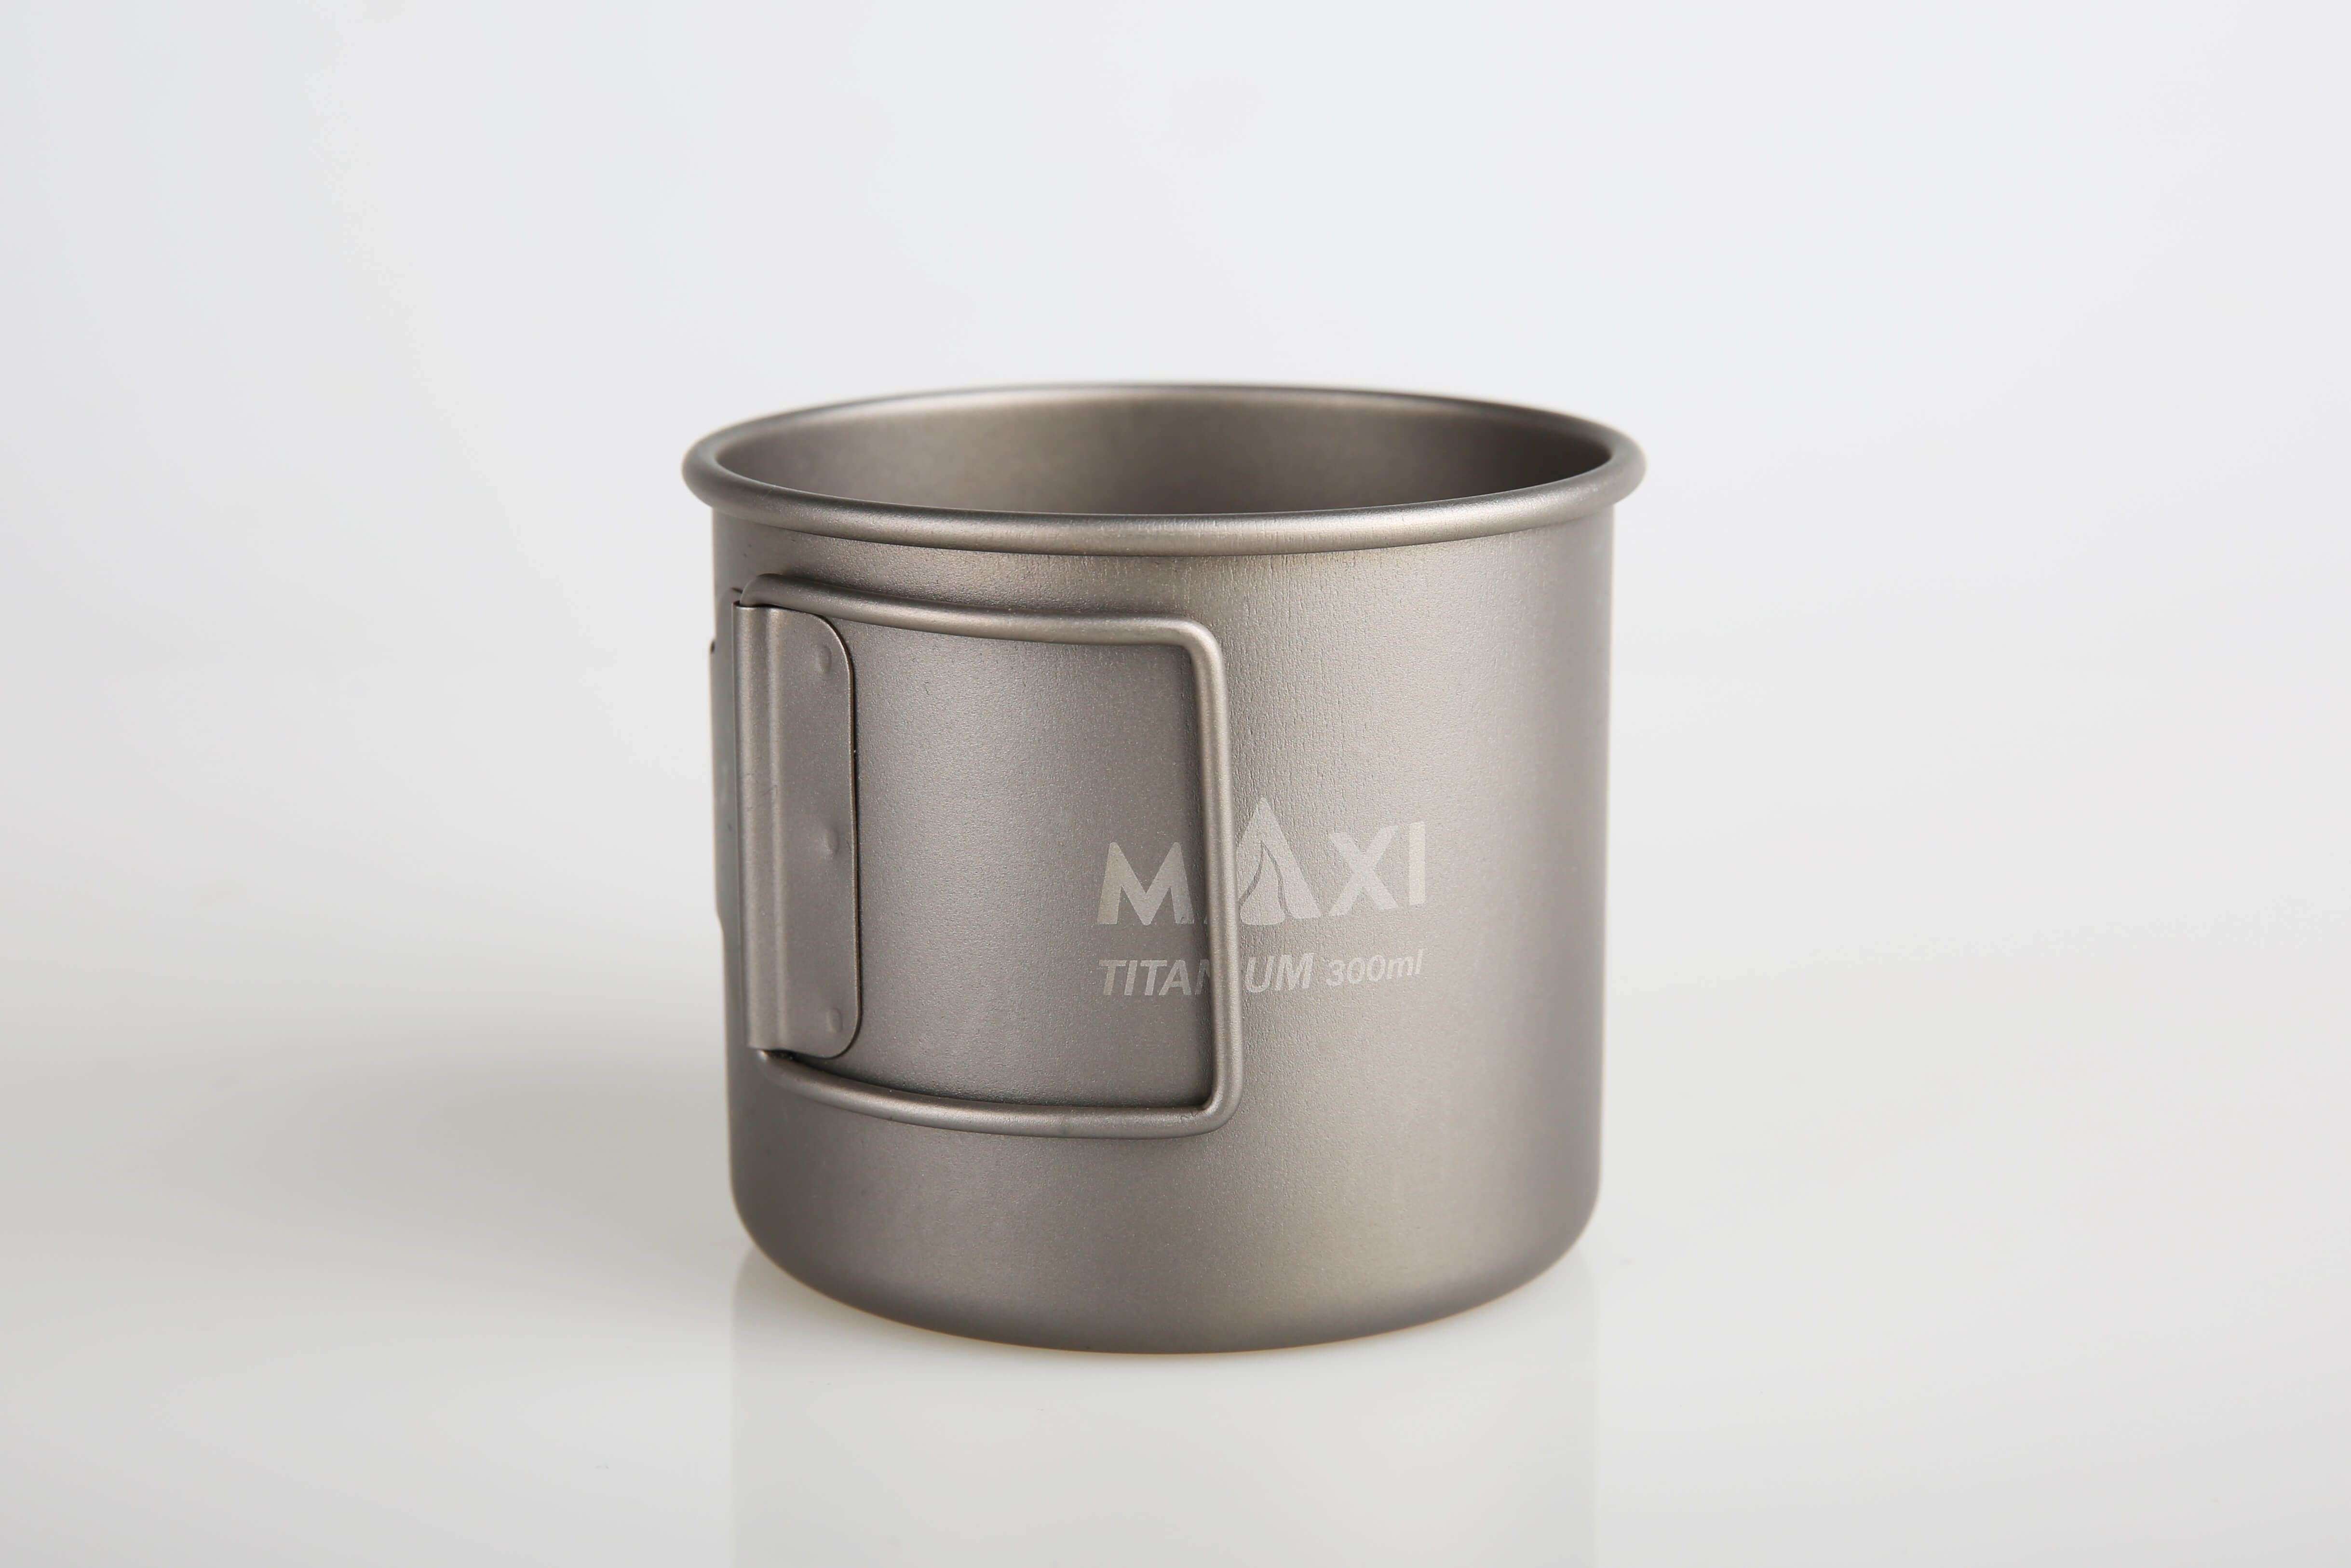 Maxi Cup-300  マキシカツプ-300  60g